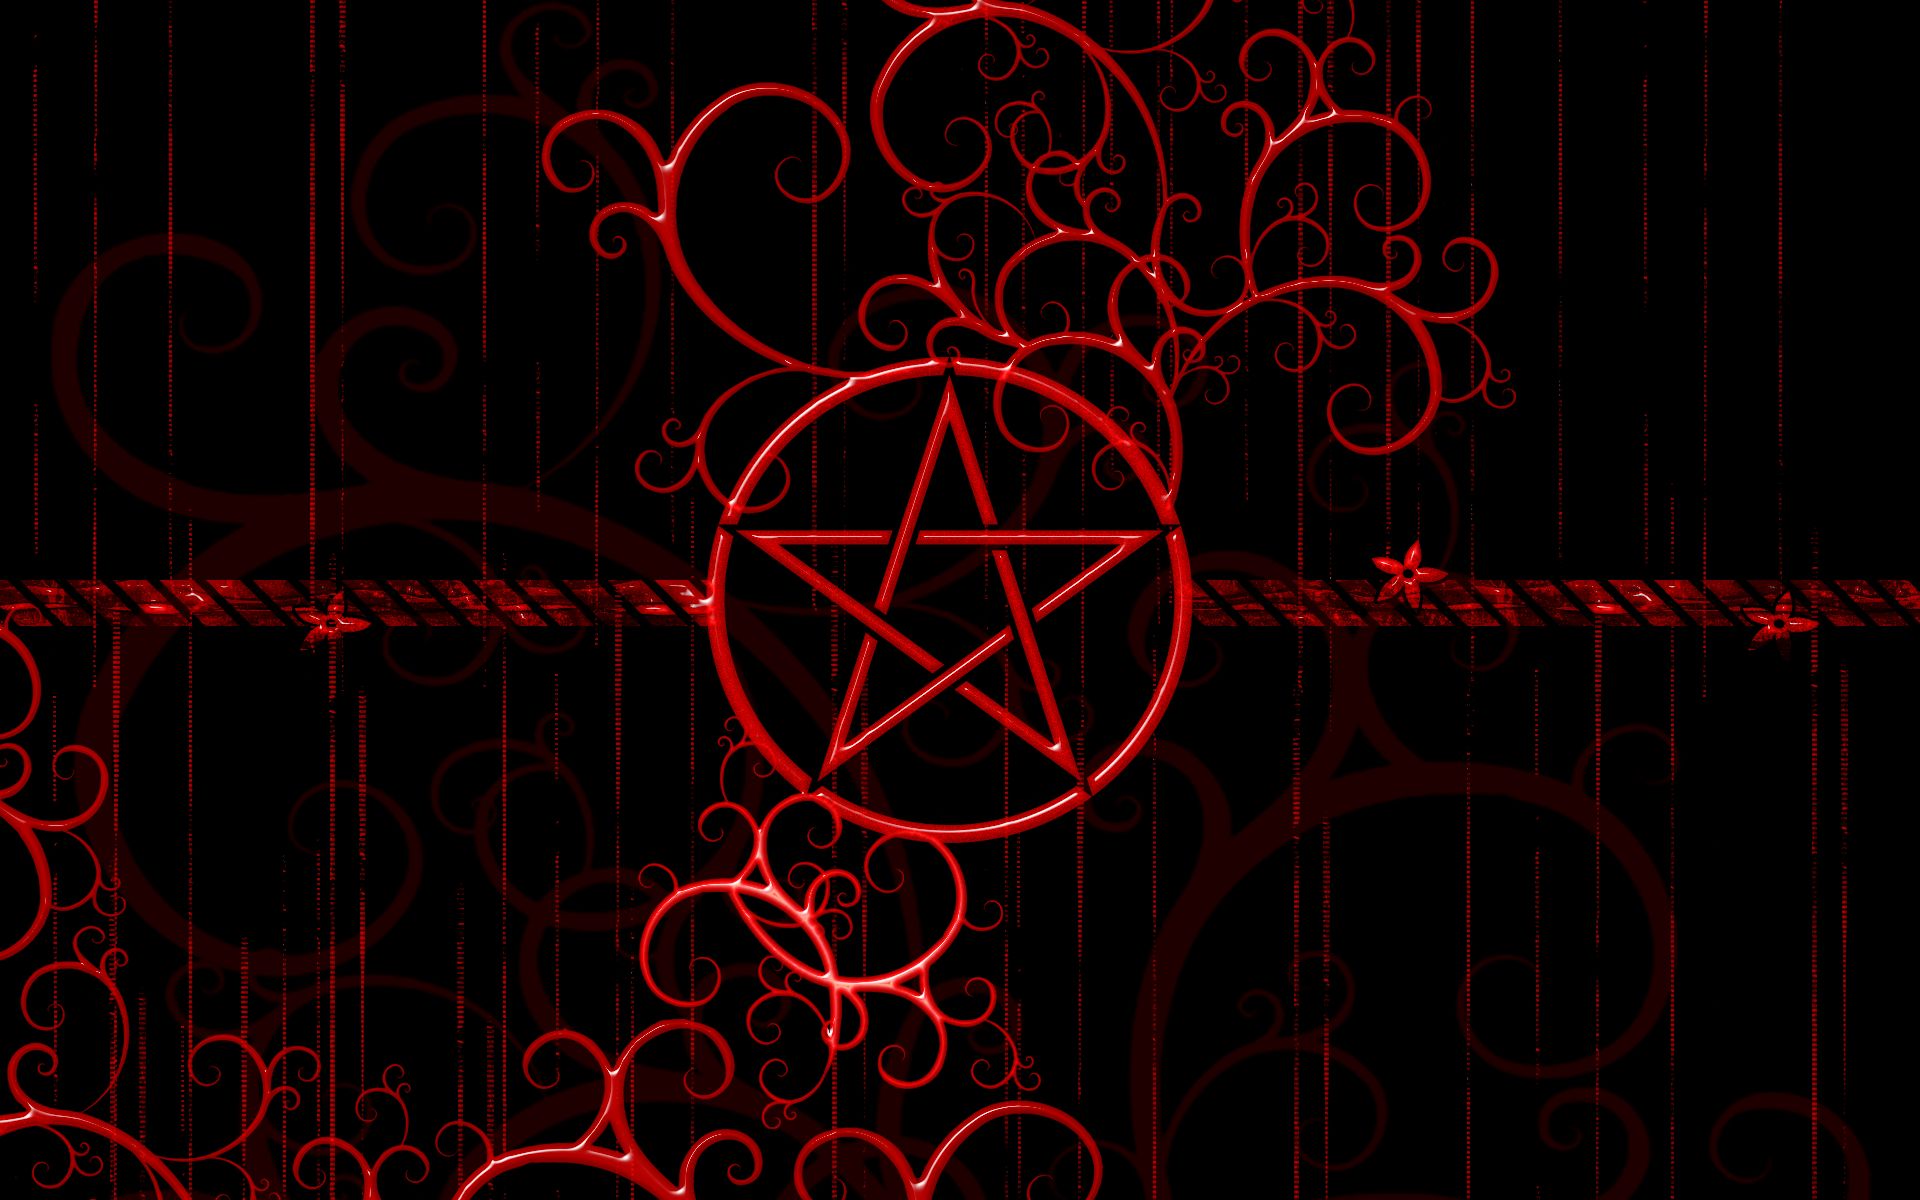 dark, occult wallpaper for mobile